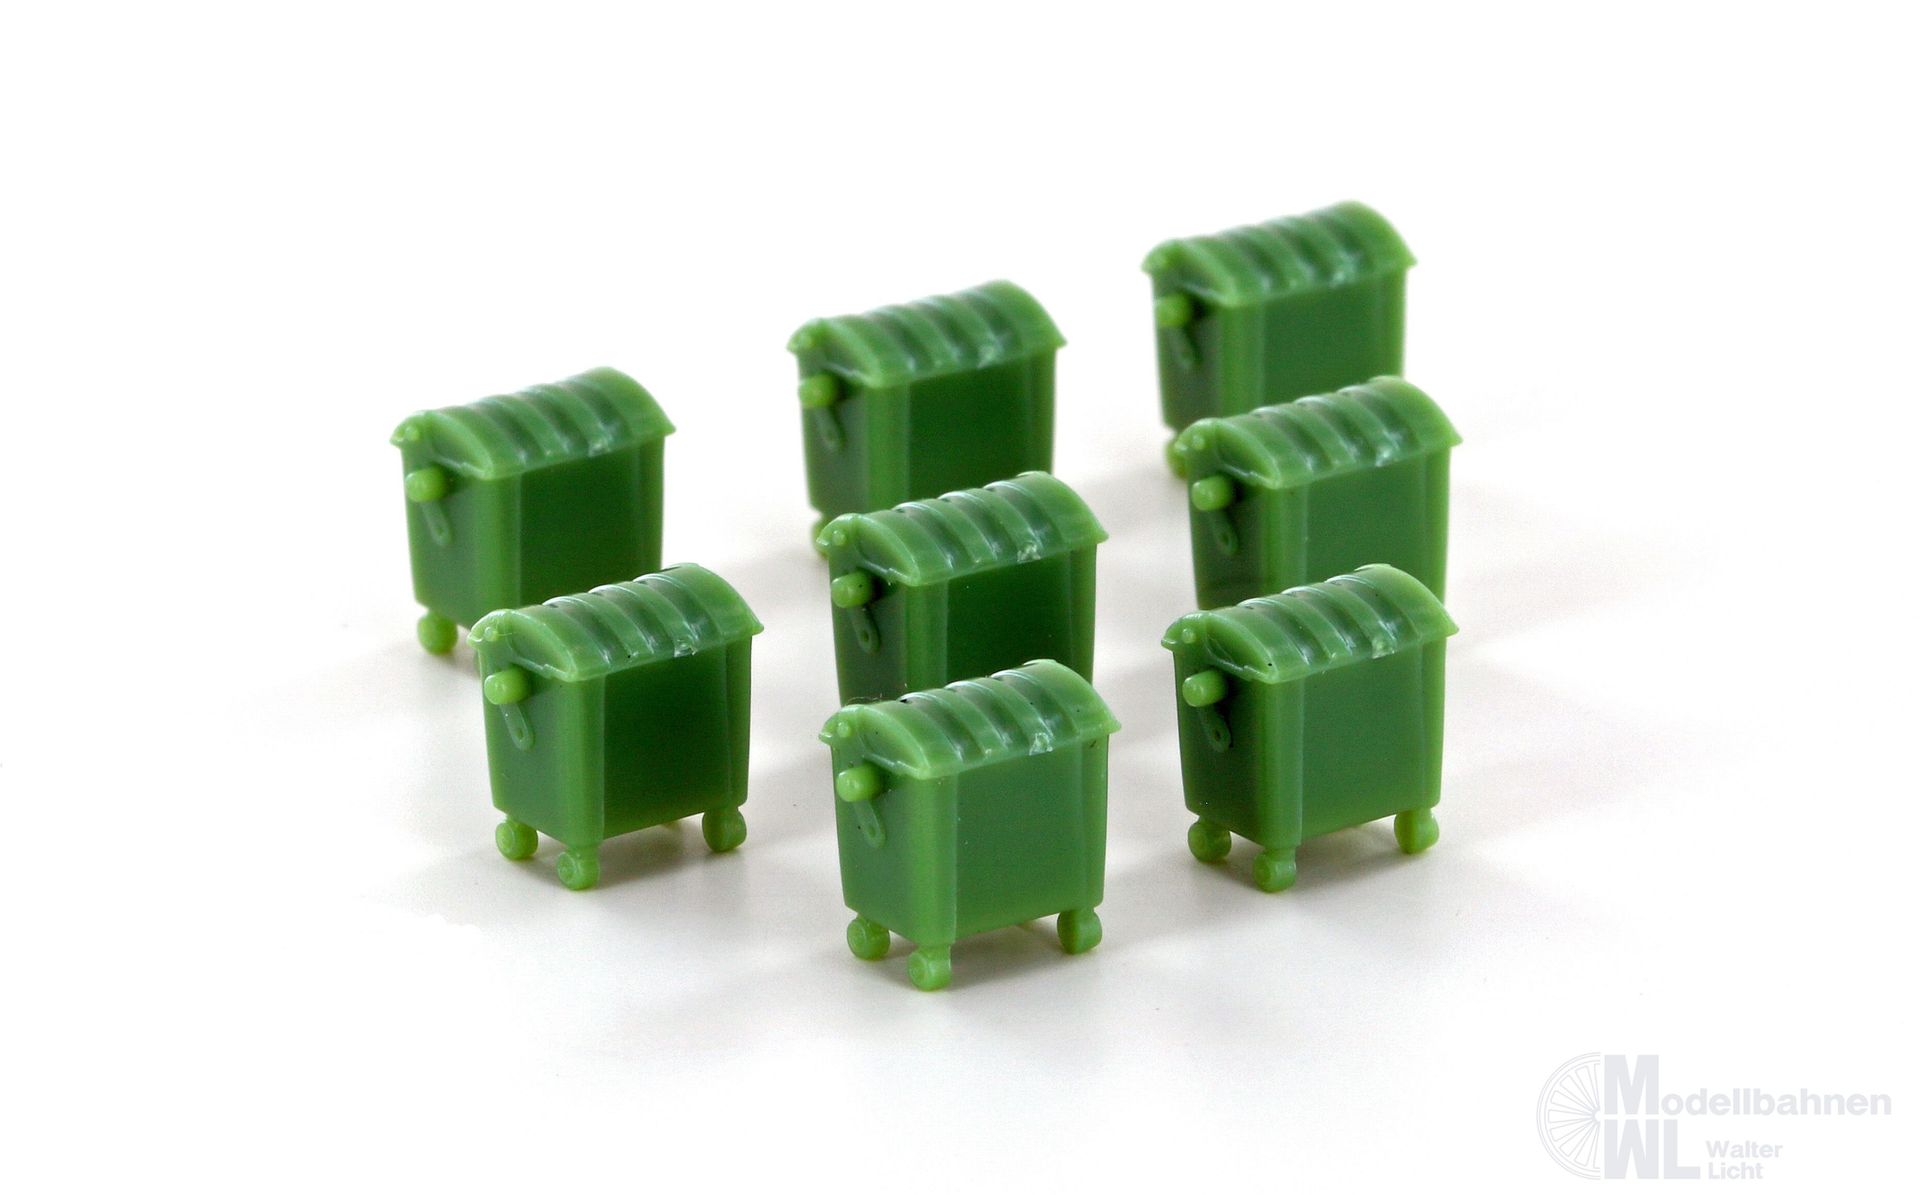 Lemke Minis 46004 - Mülltonnen grün groß 8 Stück N 1:160